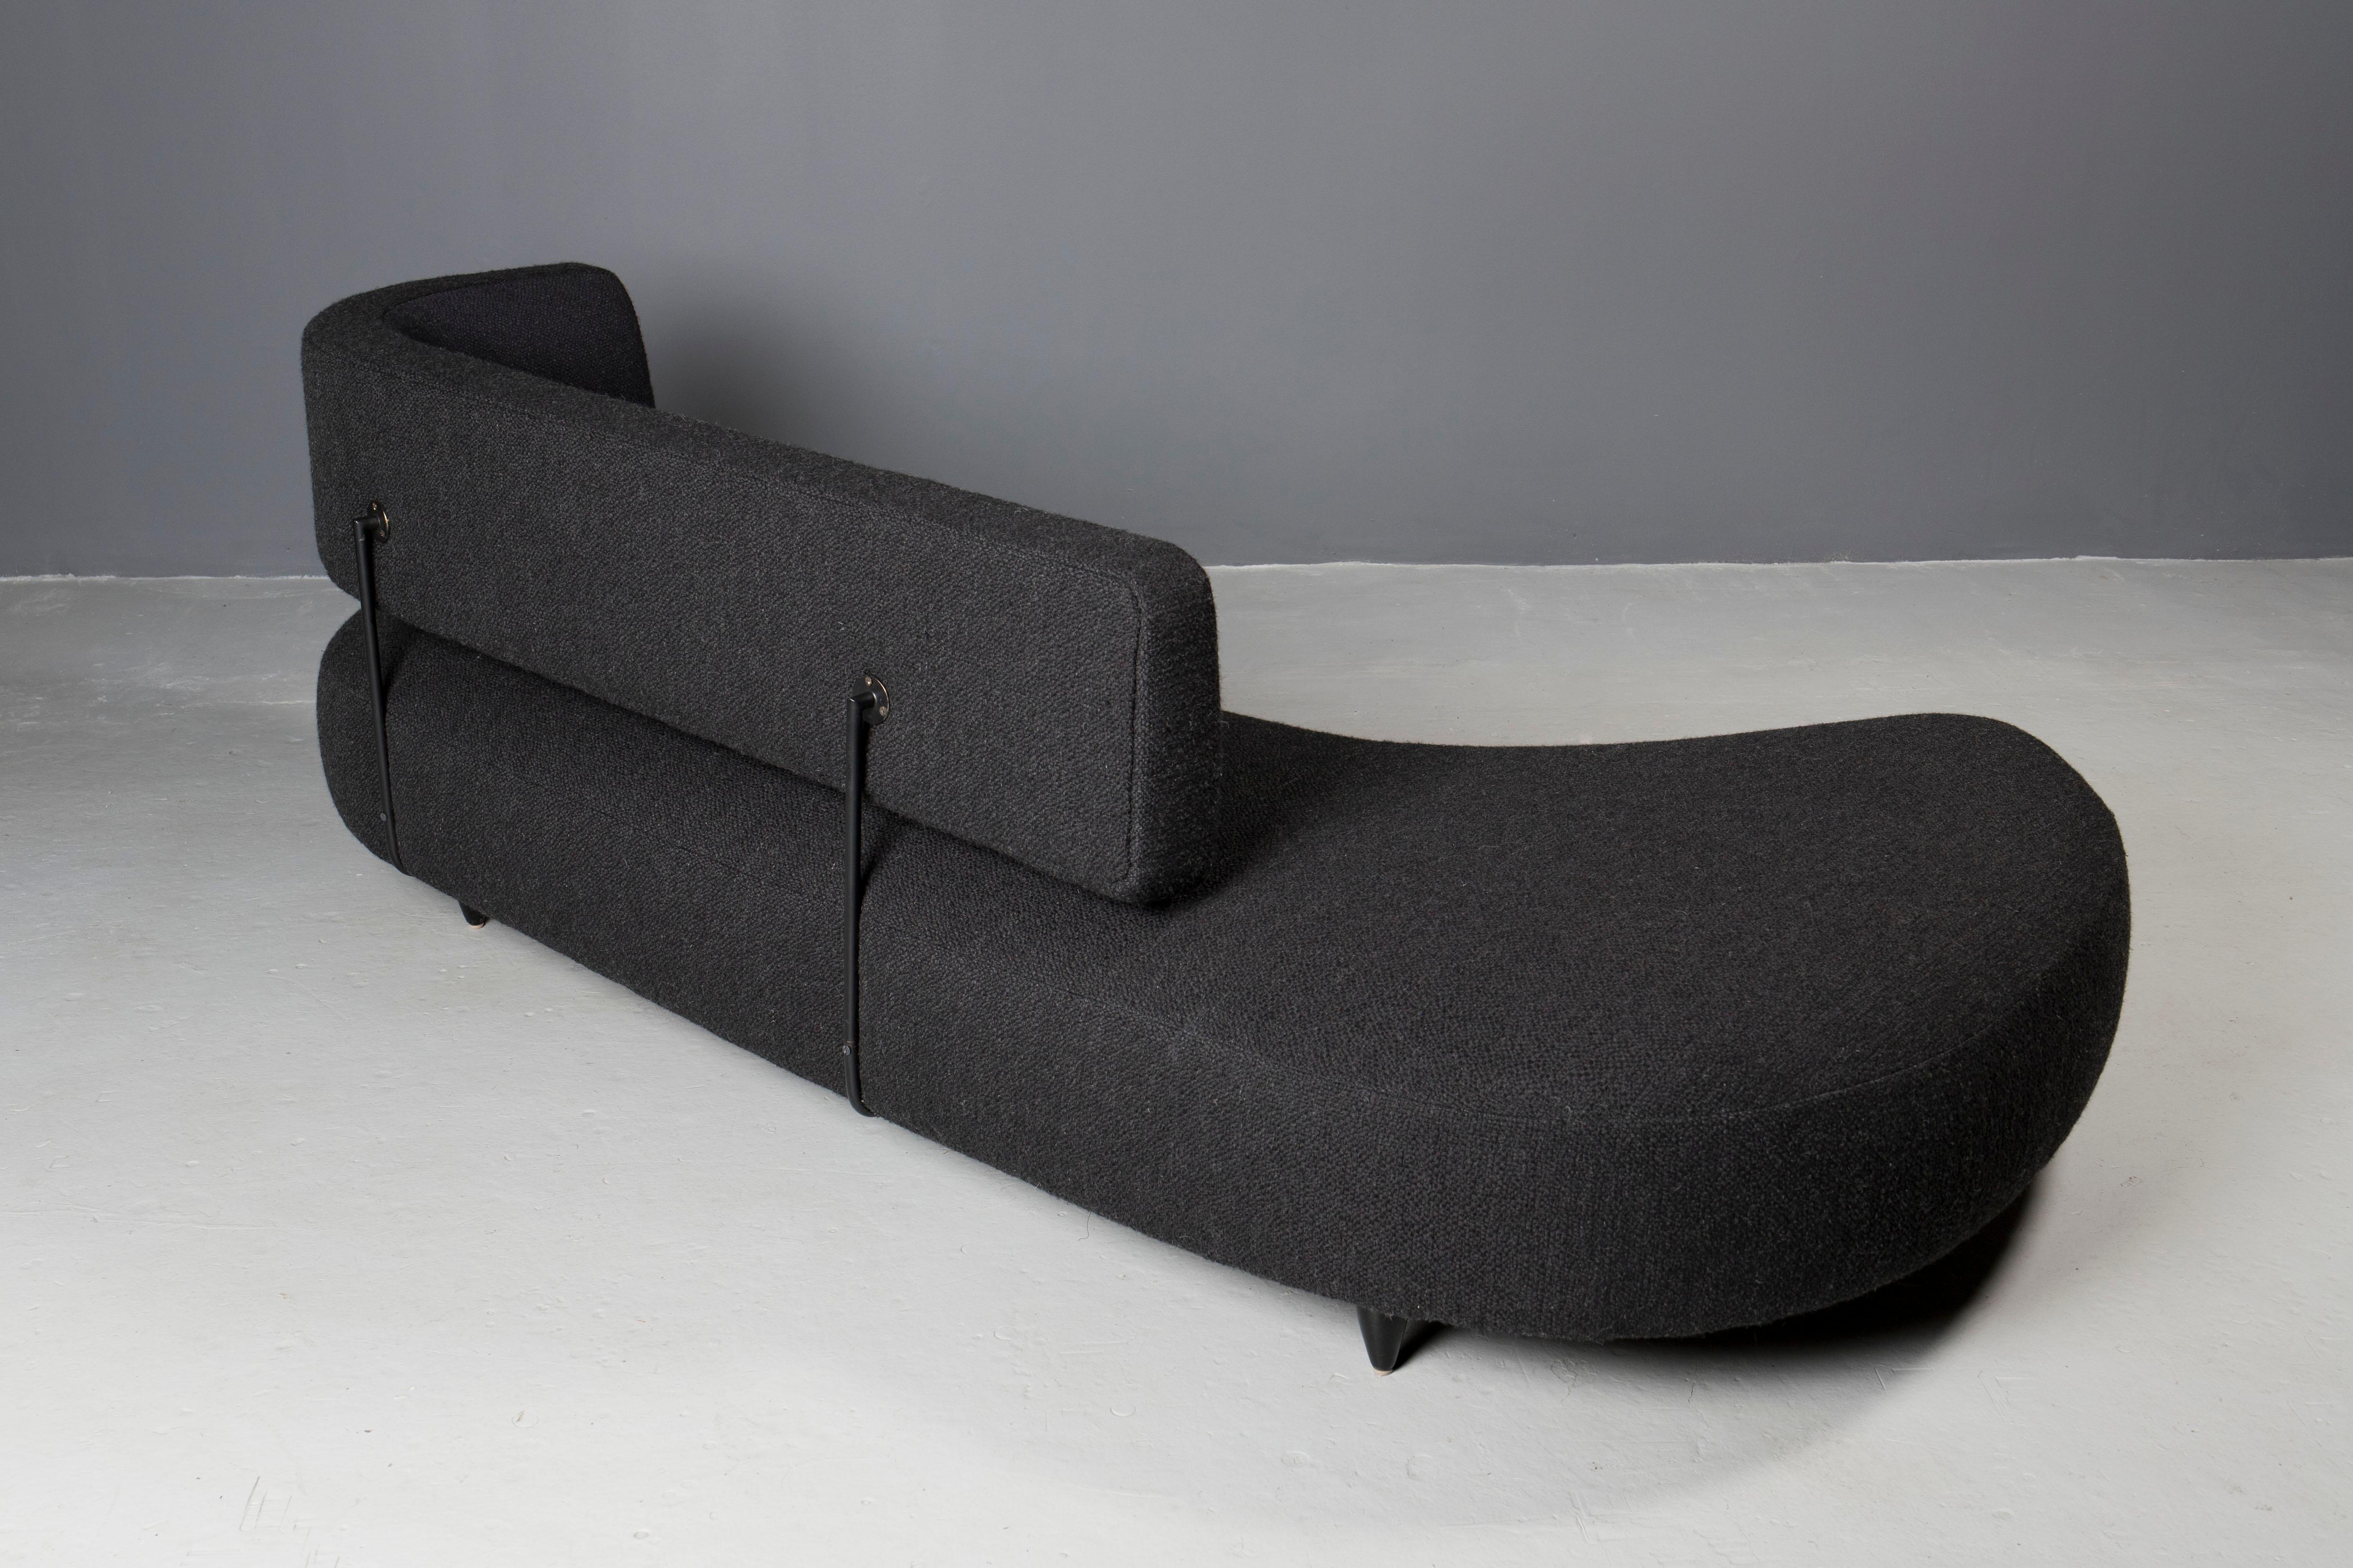 Italian Taichiro Nakai - Free Form Couch, 1954